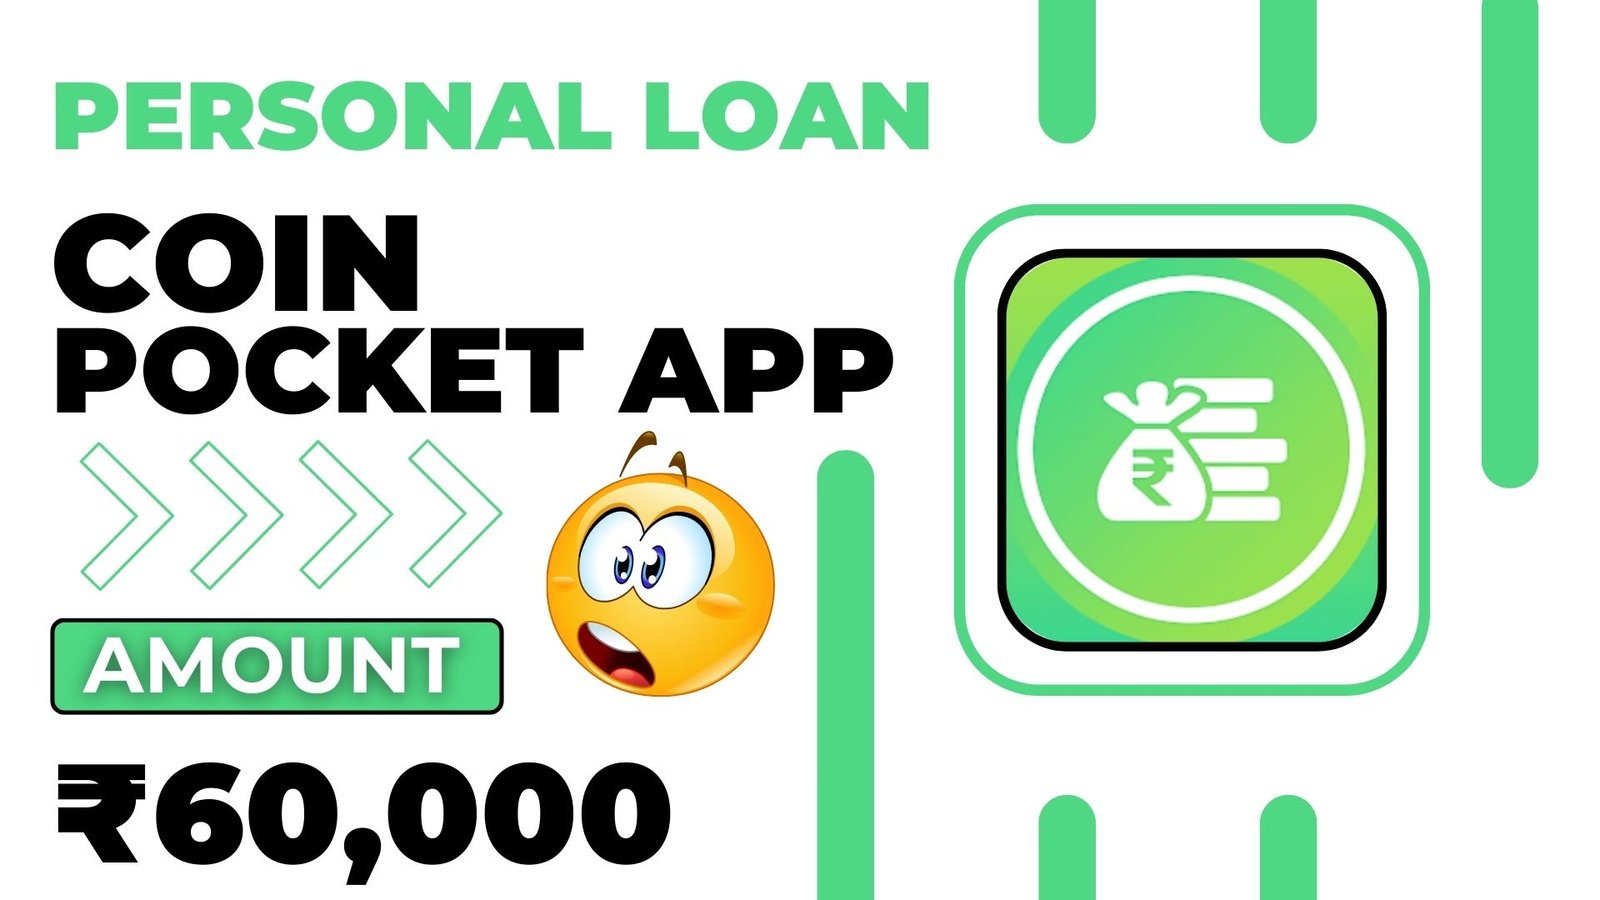 Coin Pocket Loan App Loan Amount